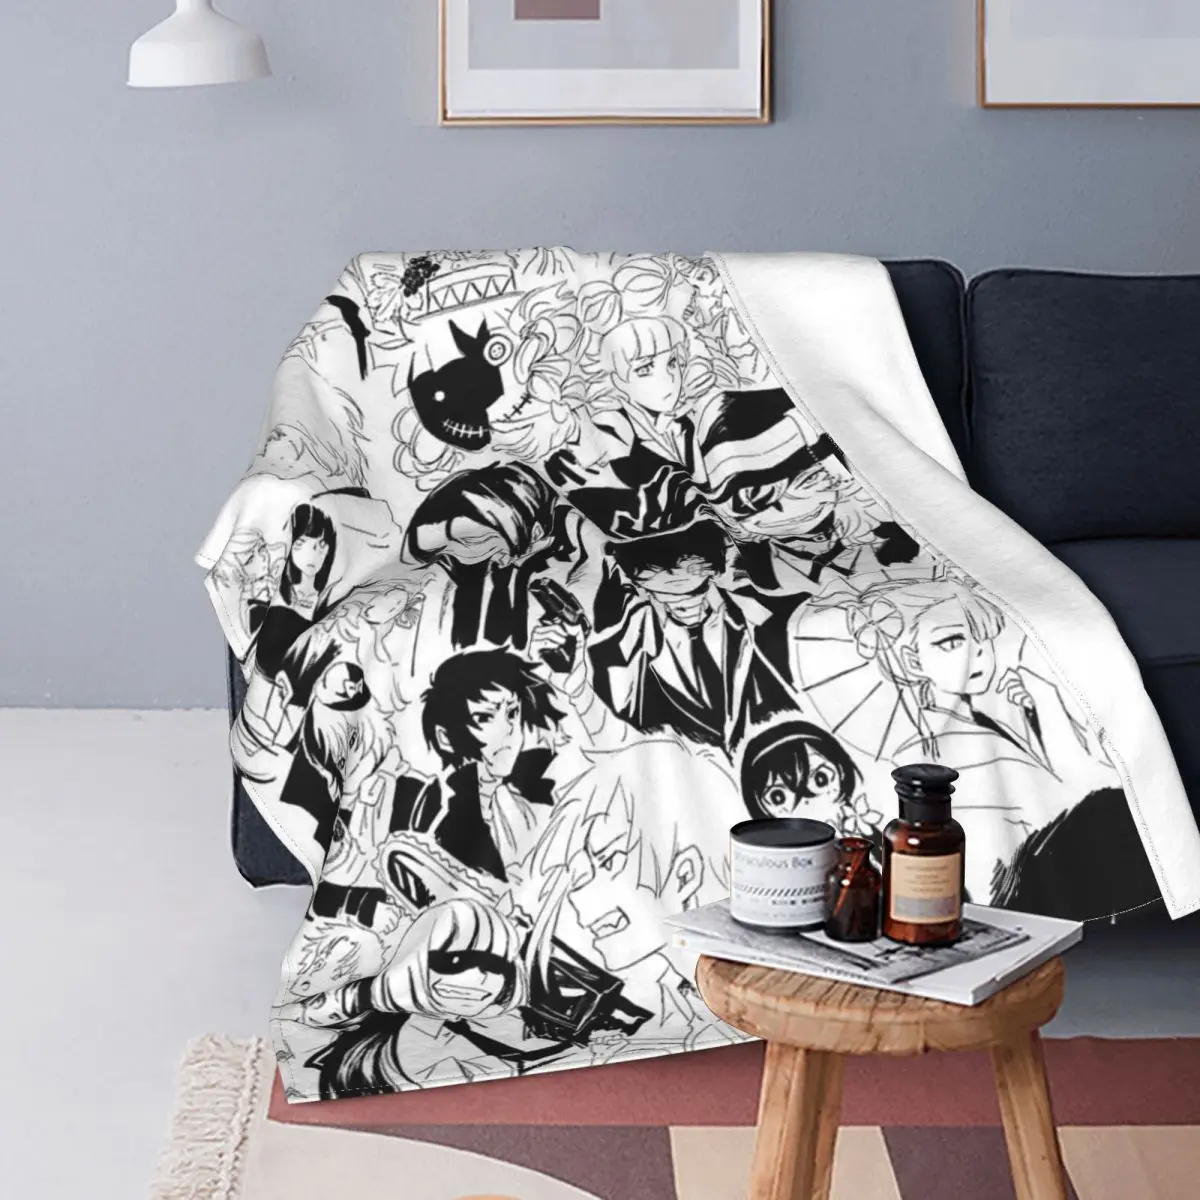 

Одеяло Bungou для аниме-манги бродячие собаки бархатное осень/зима дазай Осаму легкое покрывало s для дивана автомобильное одеяло